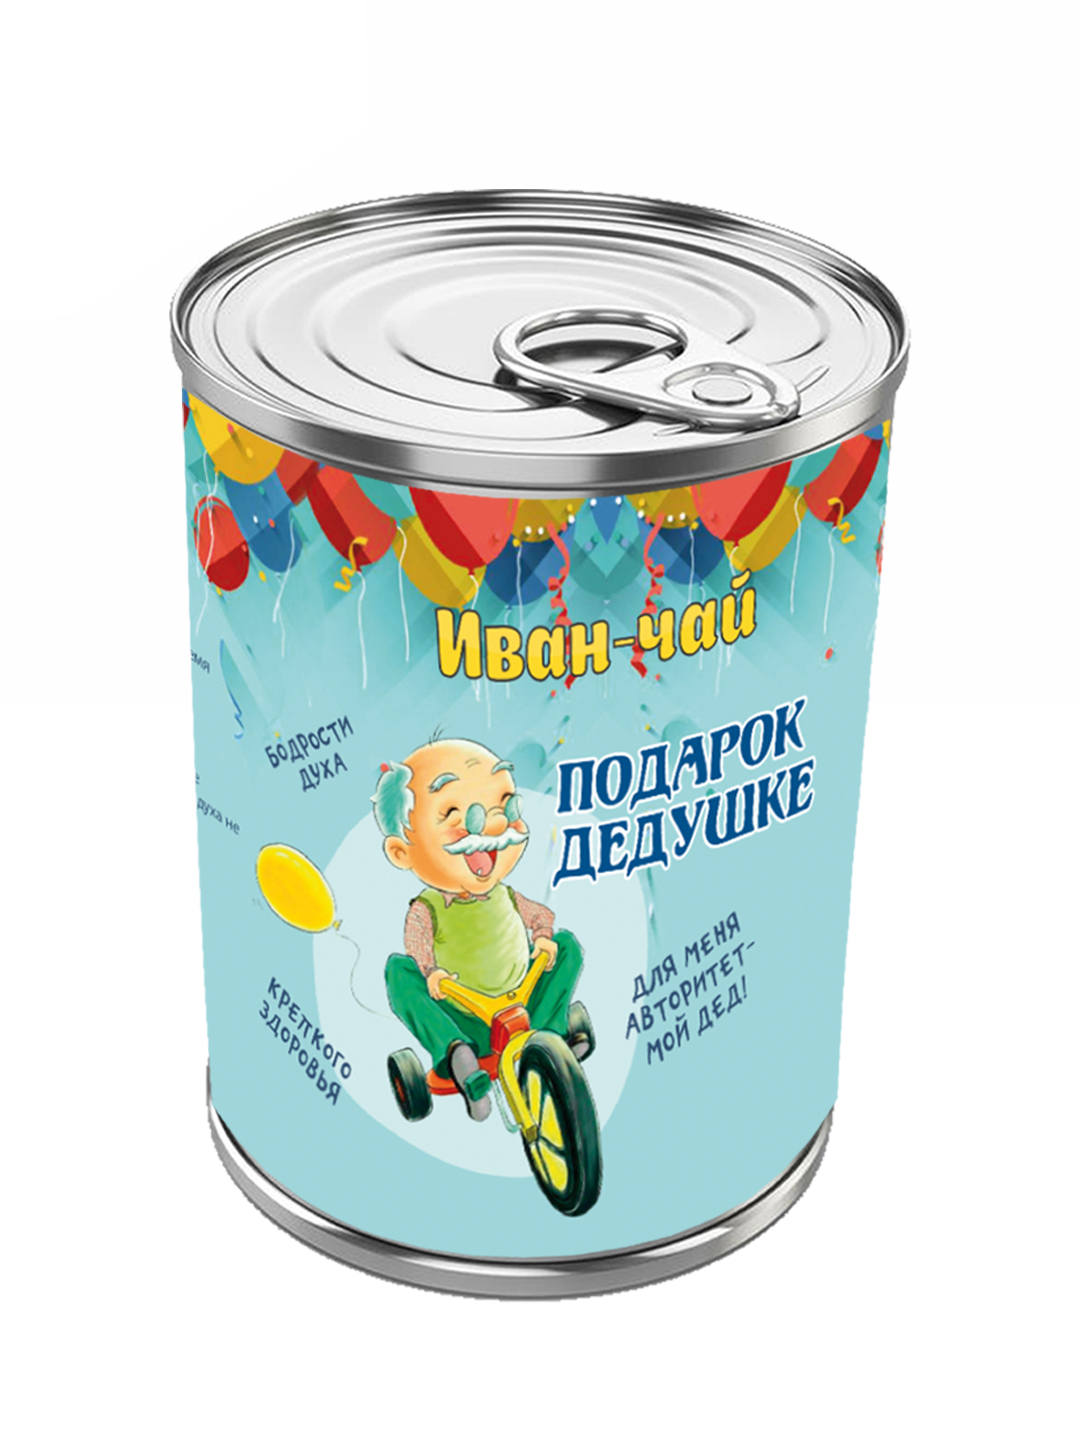 Иван-чай черный в банке Глазова гора Дедушке мелколистовой ферментированный, 50 г